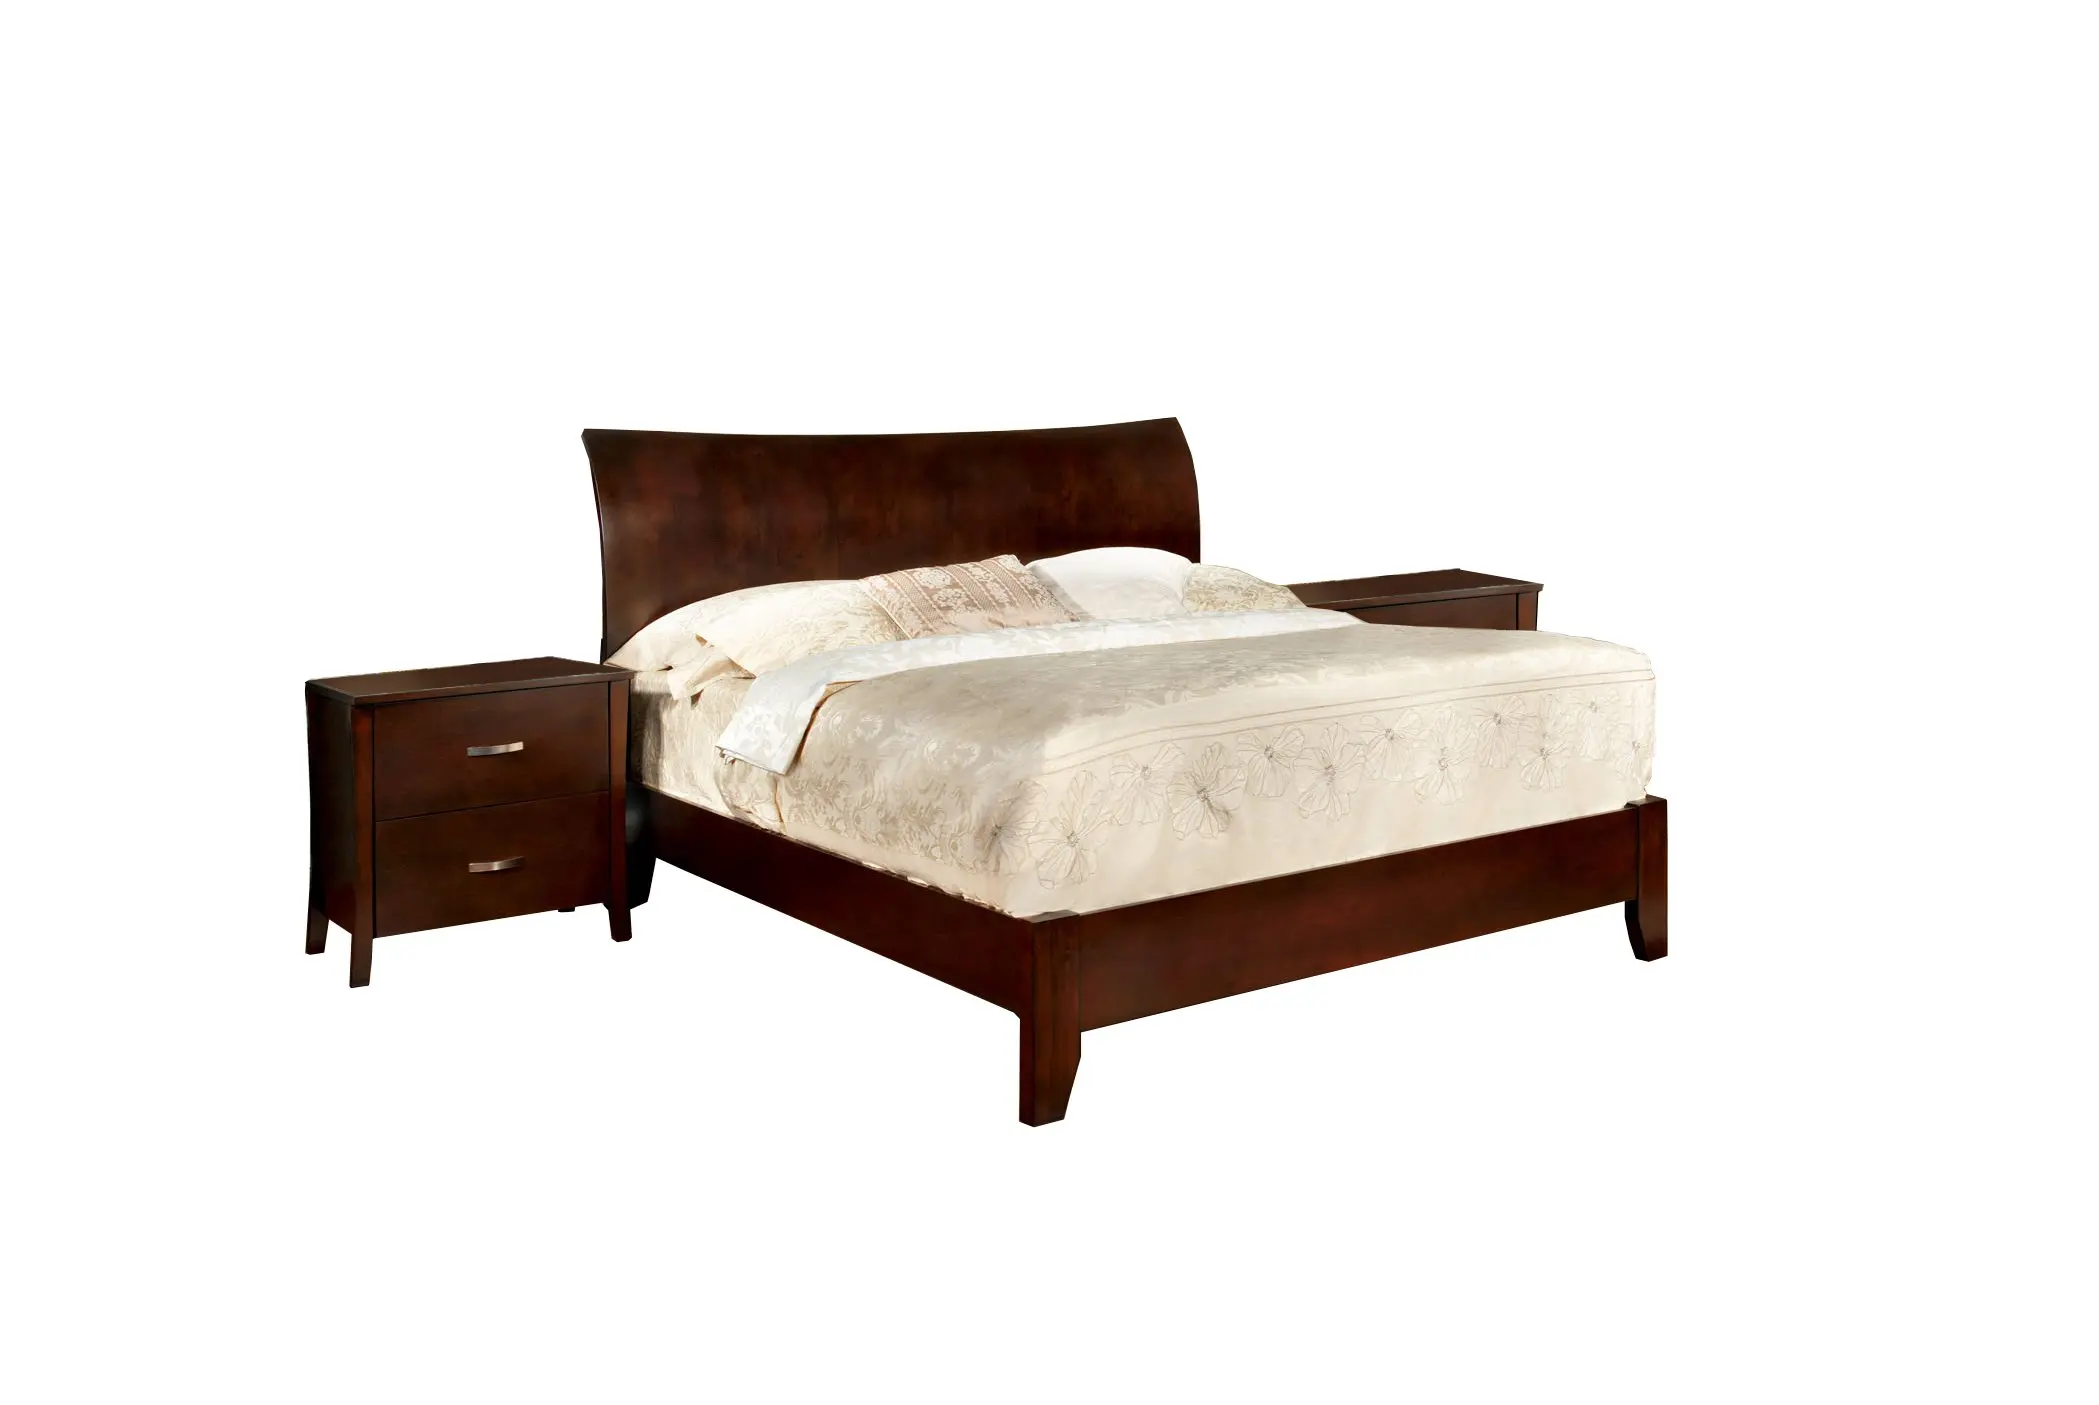 Cheap Eastern King Bed Set Find Eastern King Bed Set Deals